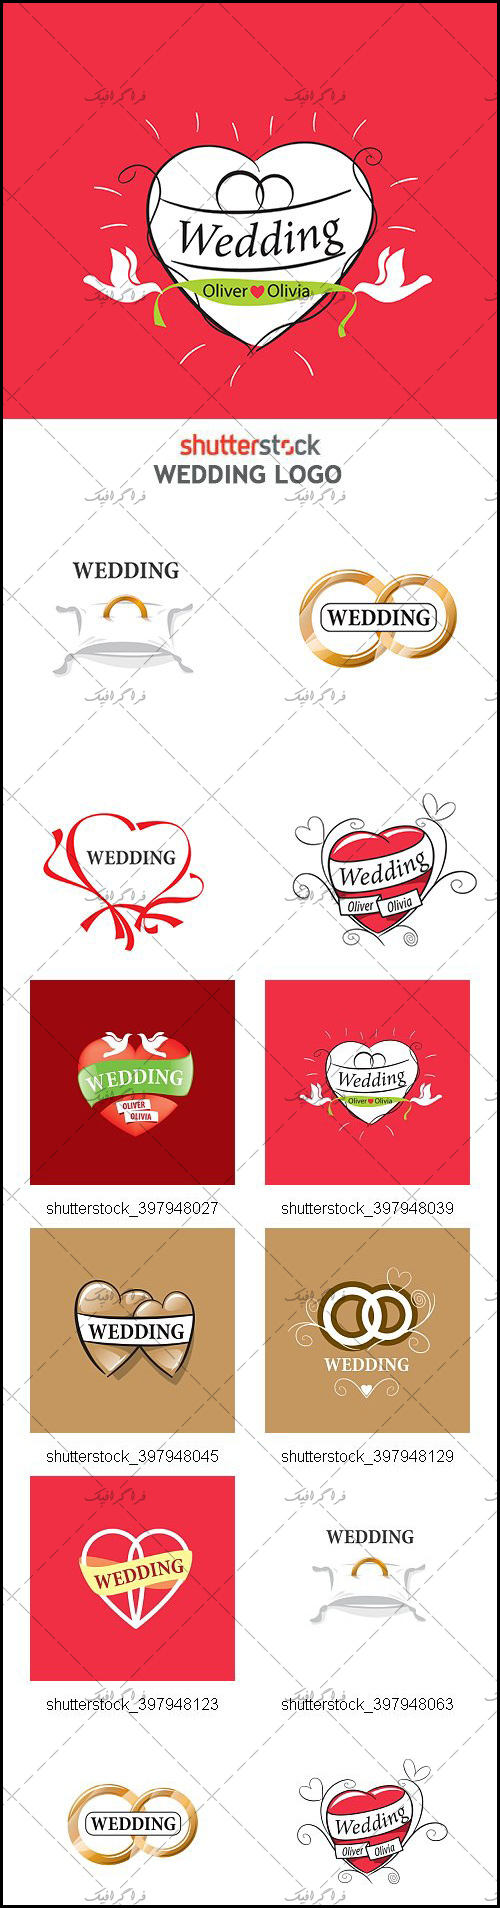 دانلود لوگو های عروسی - Wedding Logos